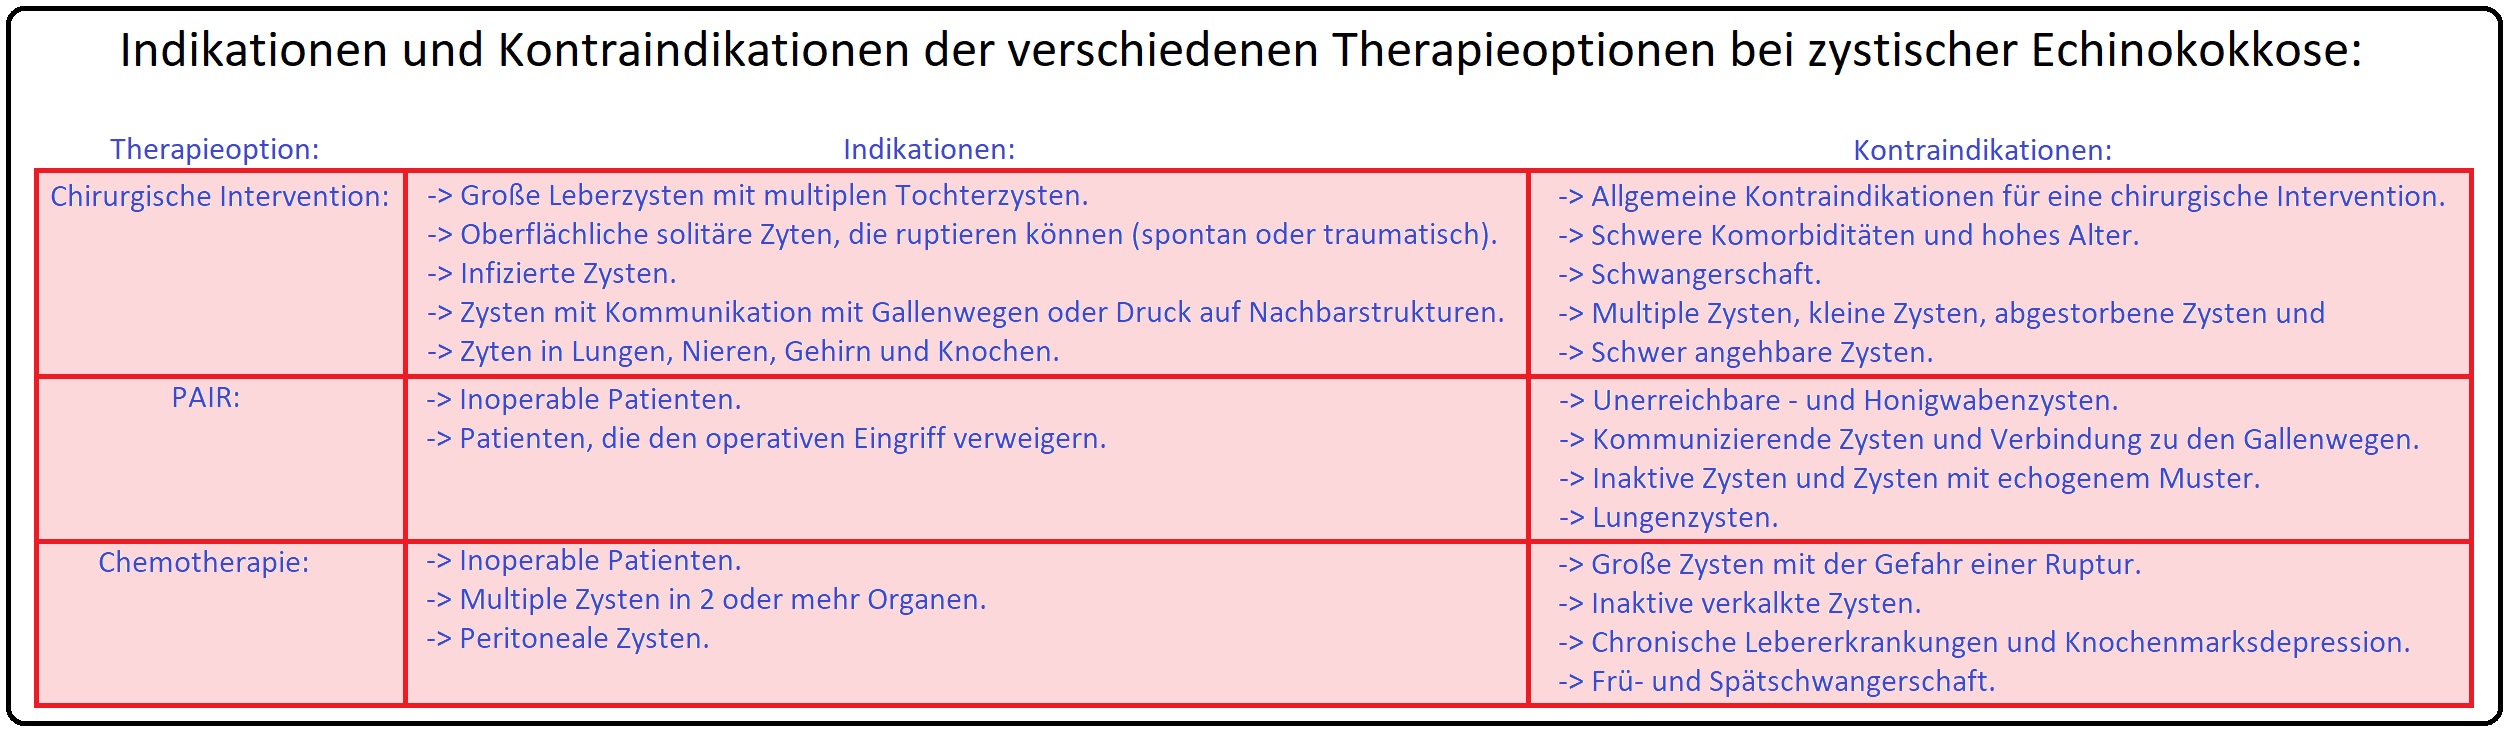 764 Indikationen und Kontraindikationen der verschiedenen Therapieoptionen bei zystischer Echinokokkose